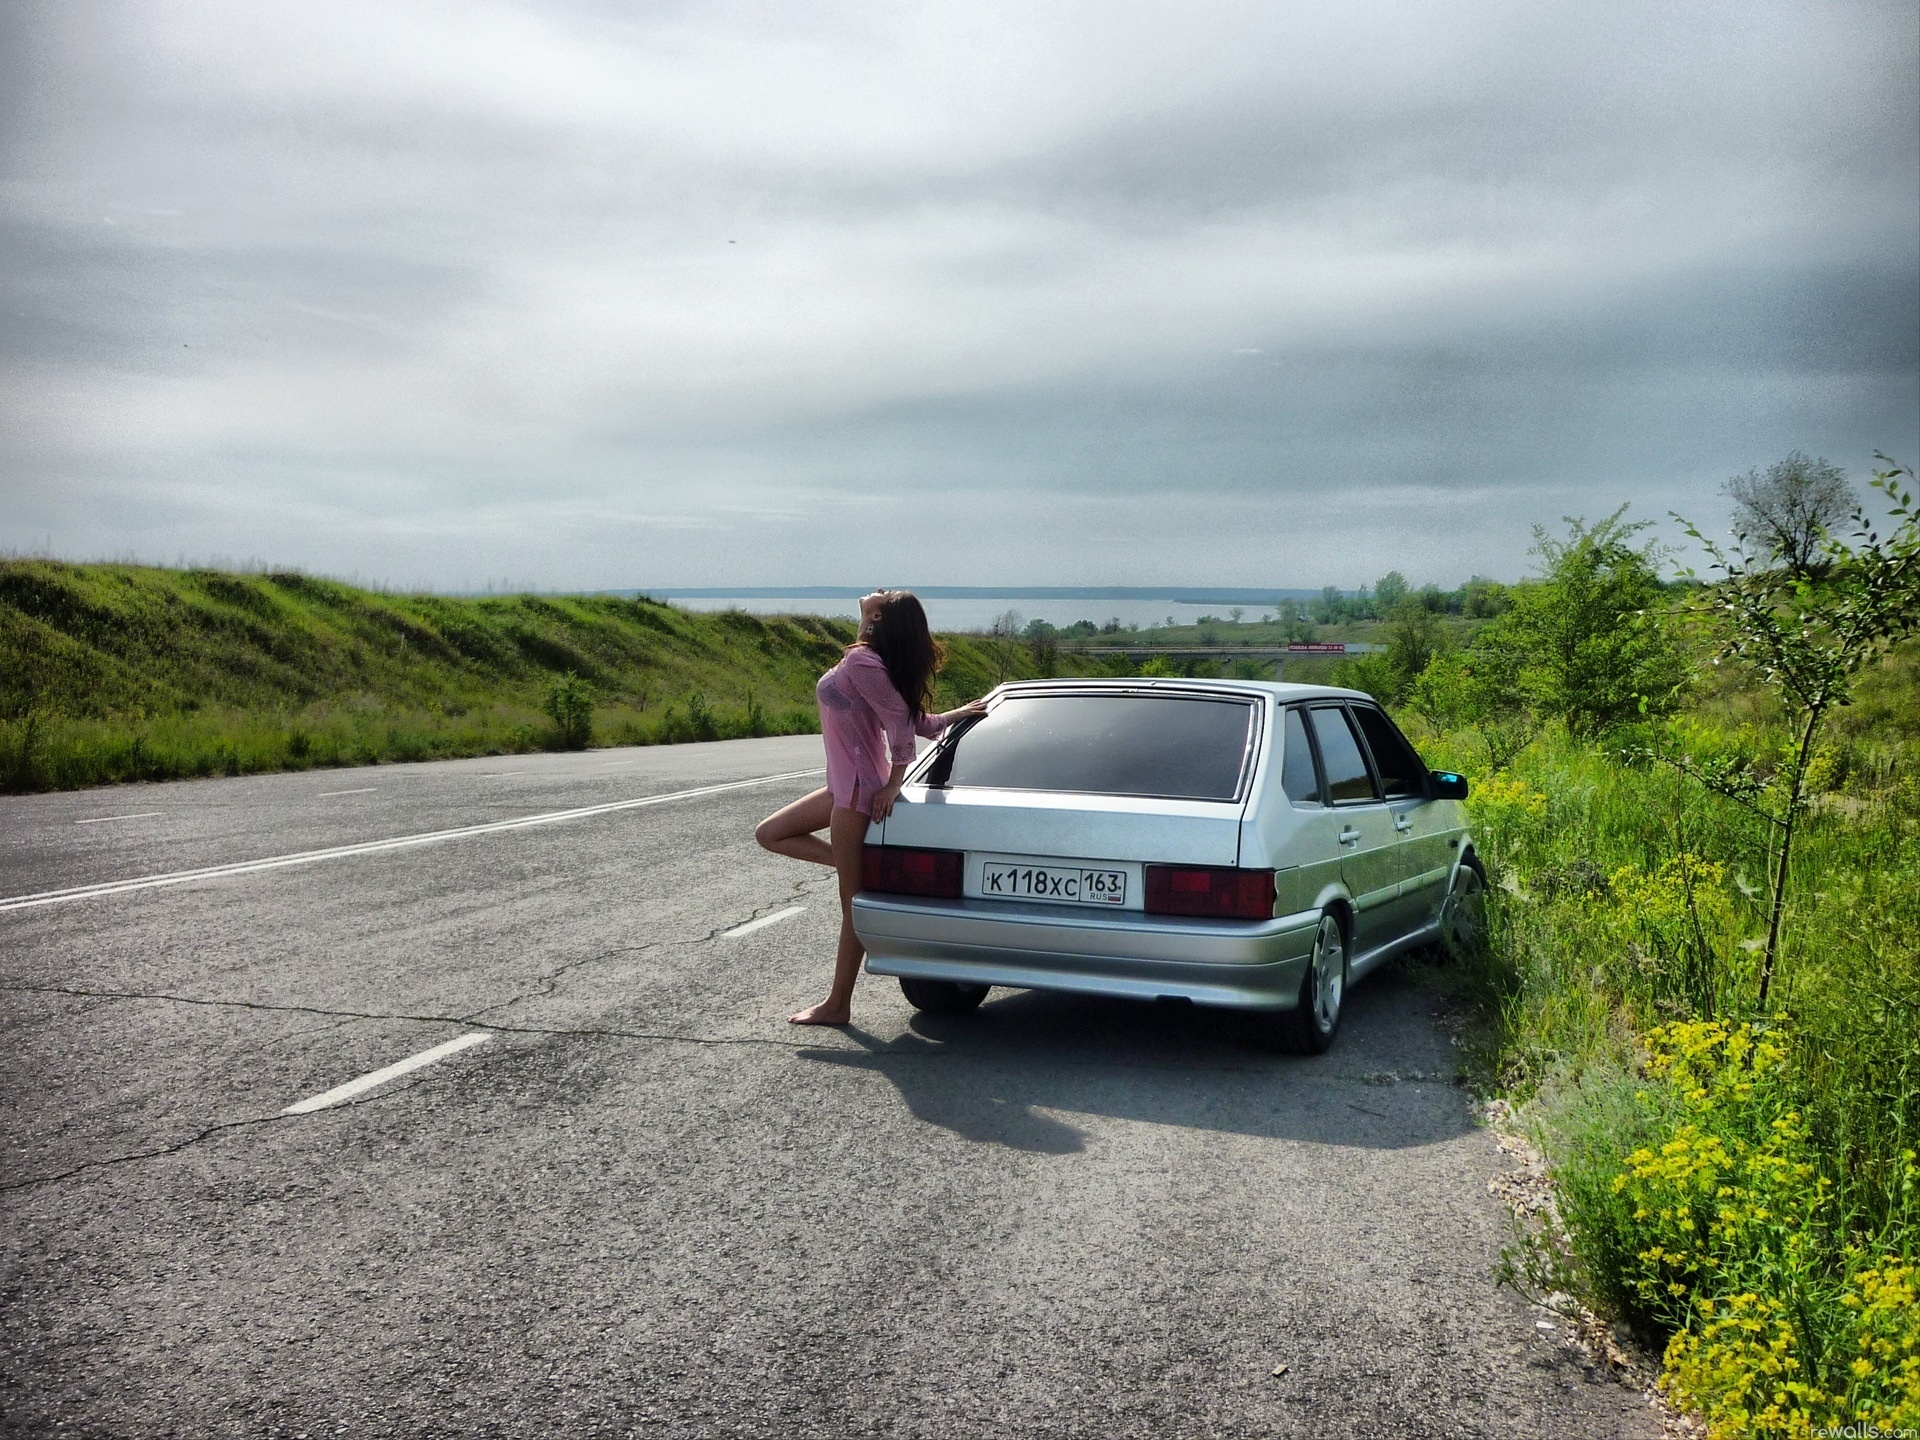 Жена на природе голая стоит у машины фото